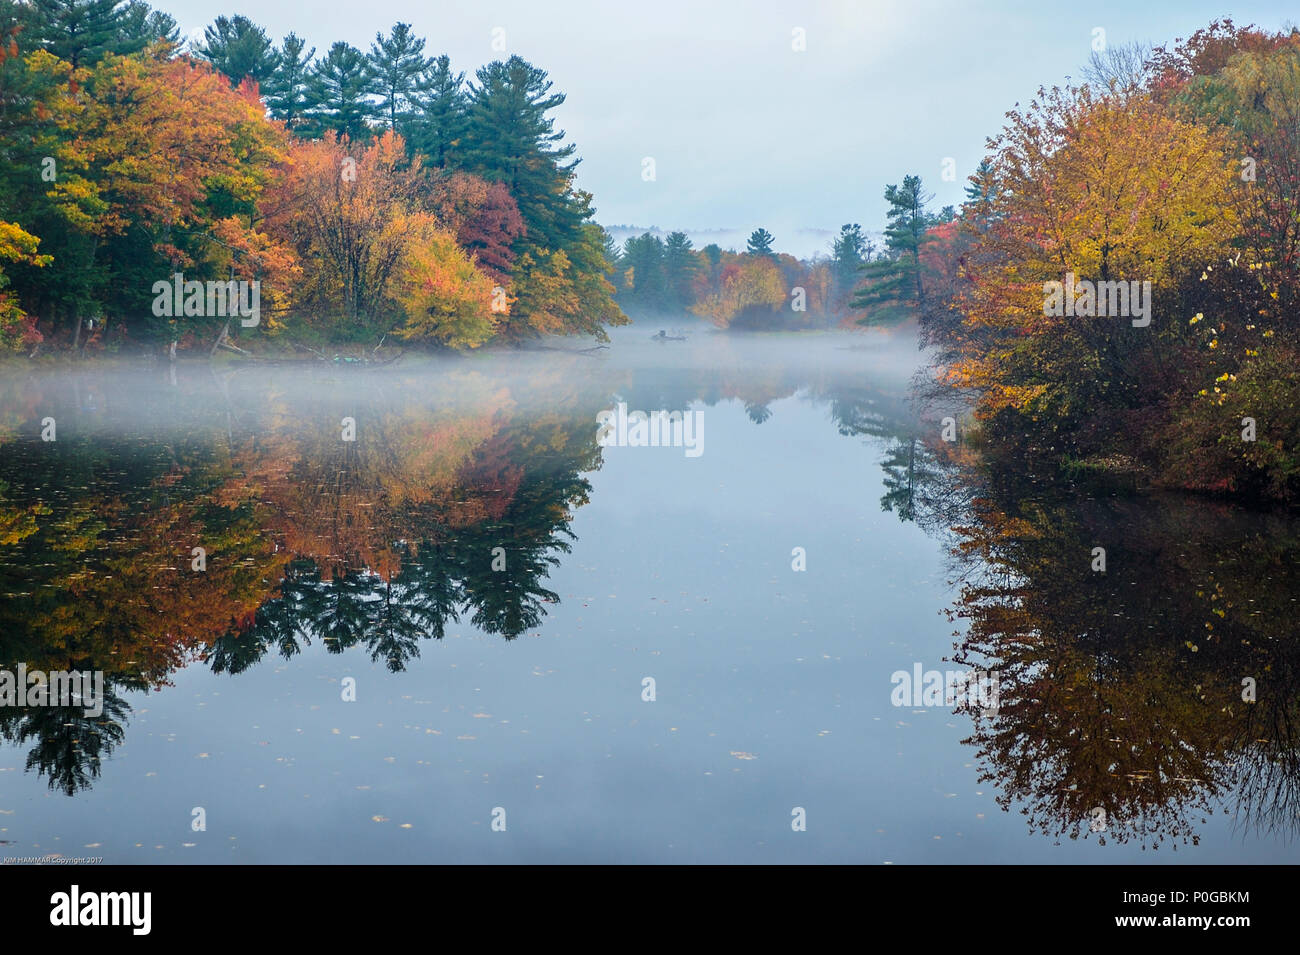 La nebbia si blocca in cima all'immagine riflessa del new England's i colori dell'autunno. Foto Stock